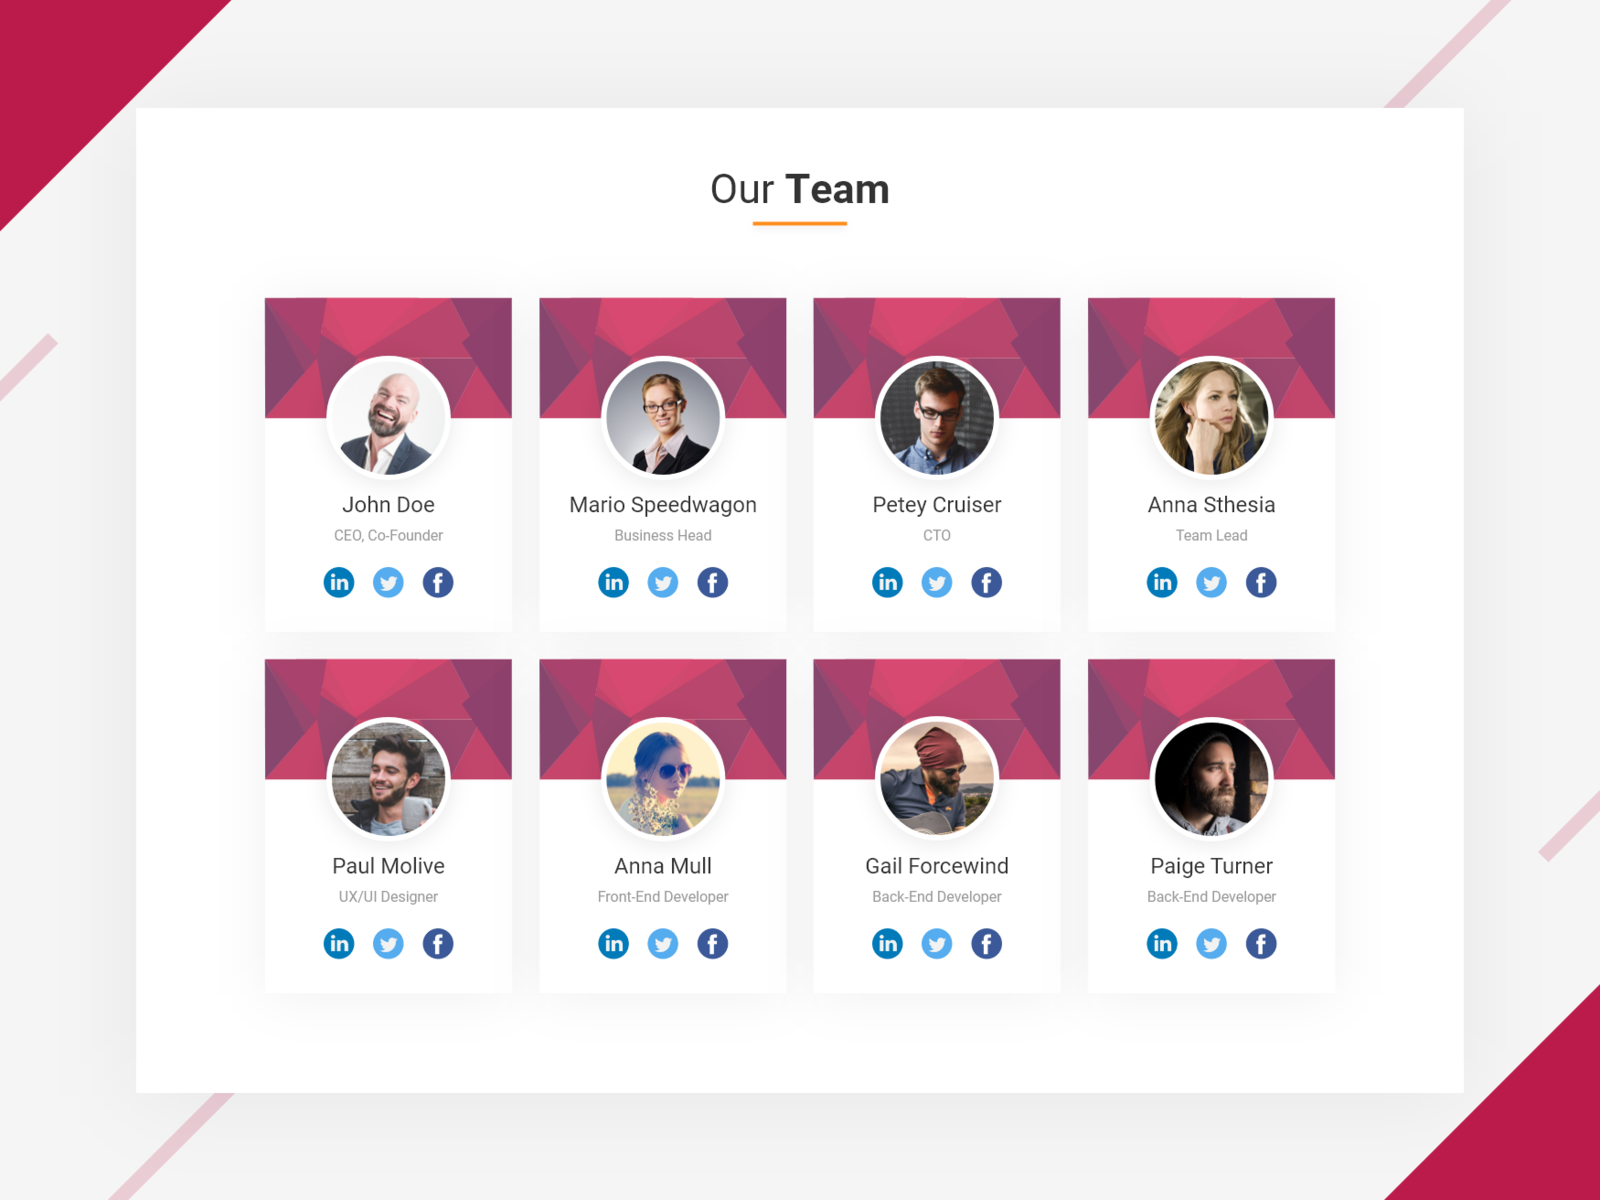 Dl armgs. Our Team UI Design. UI Card Design our Team. Our Team CSS. Our Team CSS Design.